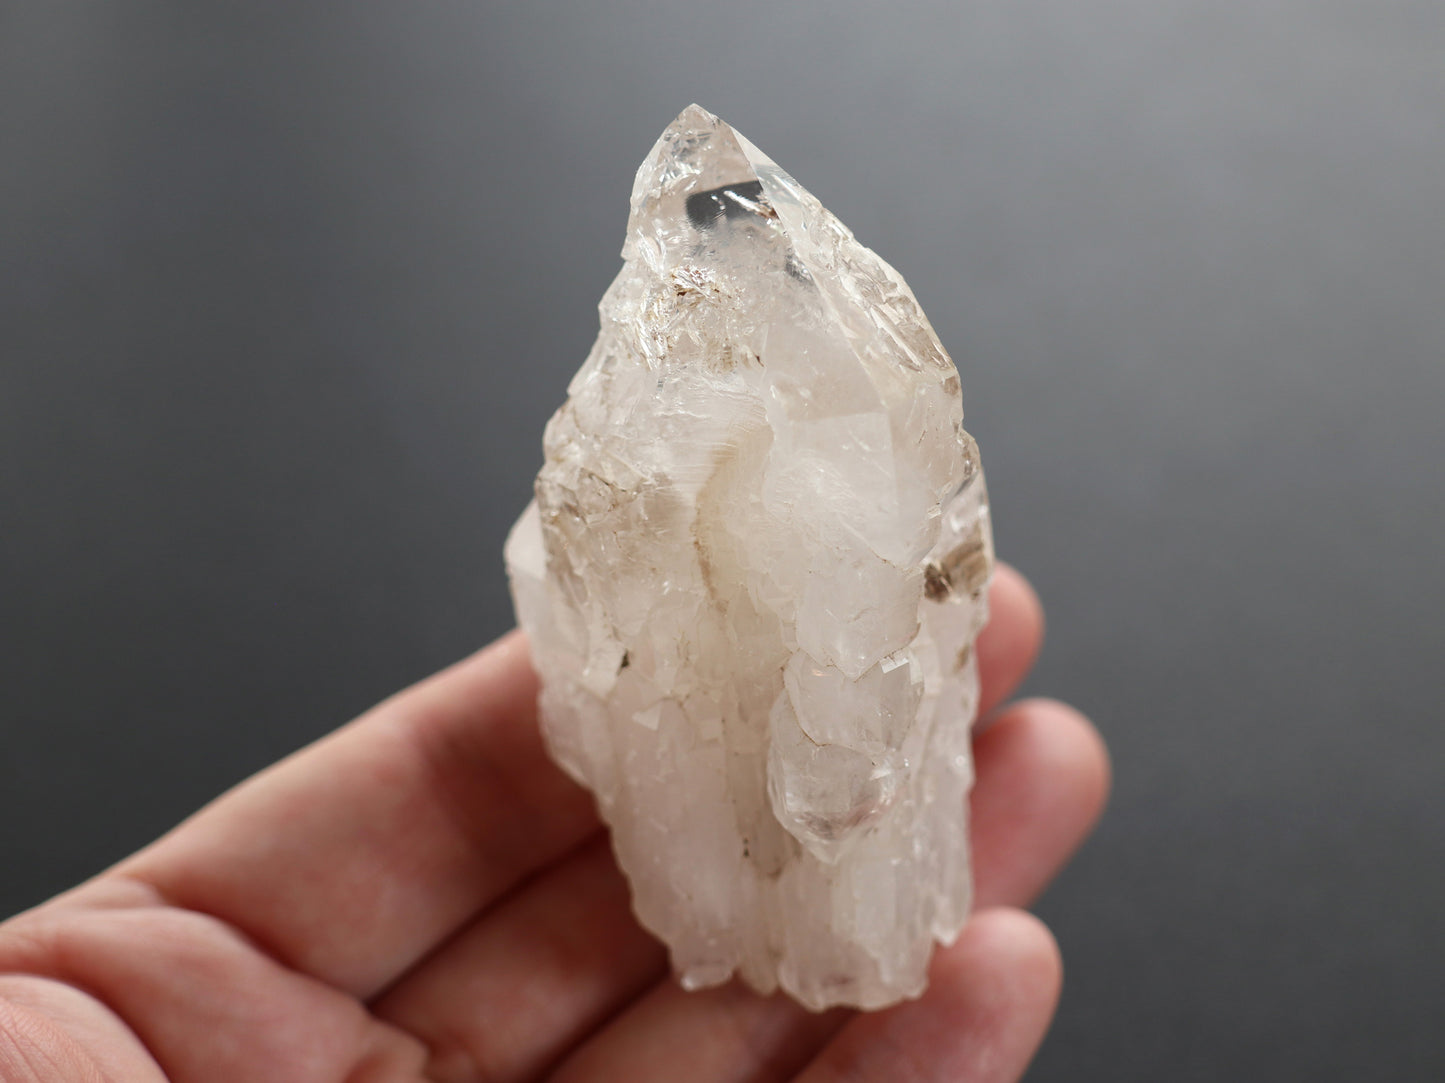 エレスチャル、セプター、ガネーシュヒマール産ヒマラヤ水晶原石PN:GG-121